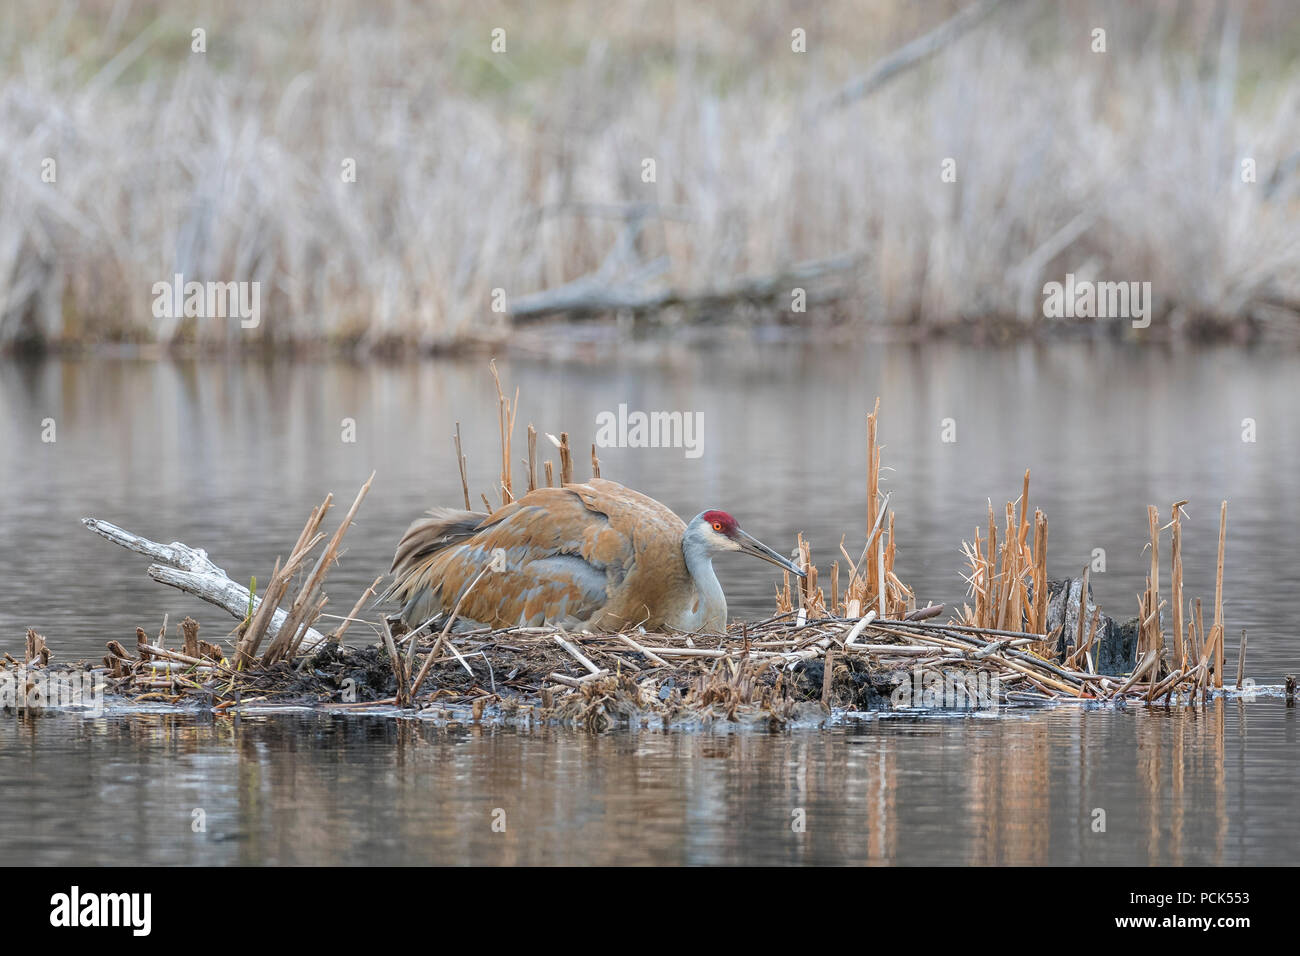 La grue antigone (Grus canadensis canadensis, anciennement) assis sur son nid, avril, E USA, par Dominique Braud/Dembinsky Assoc Photo Banque D'Images